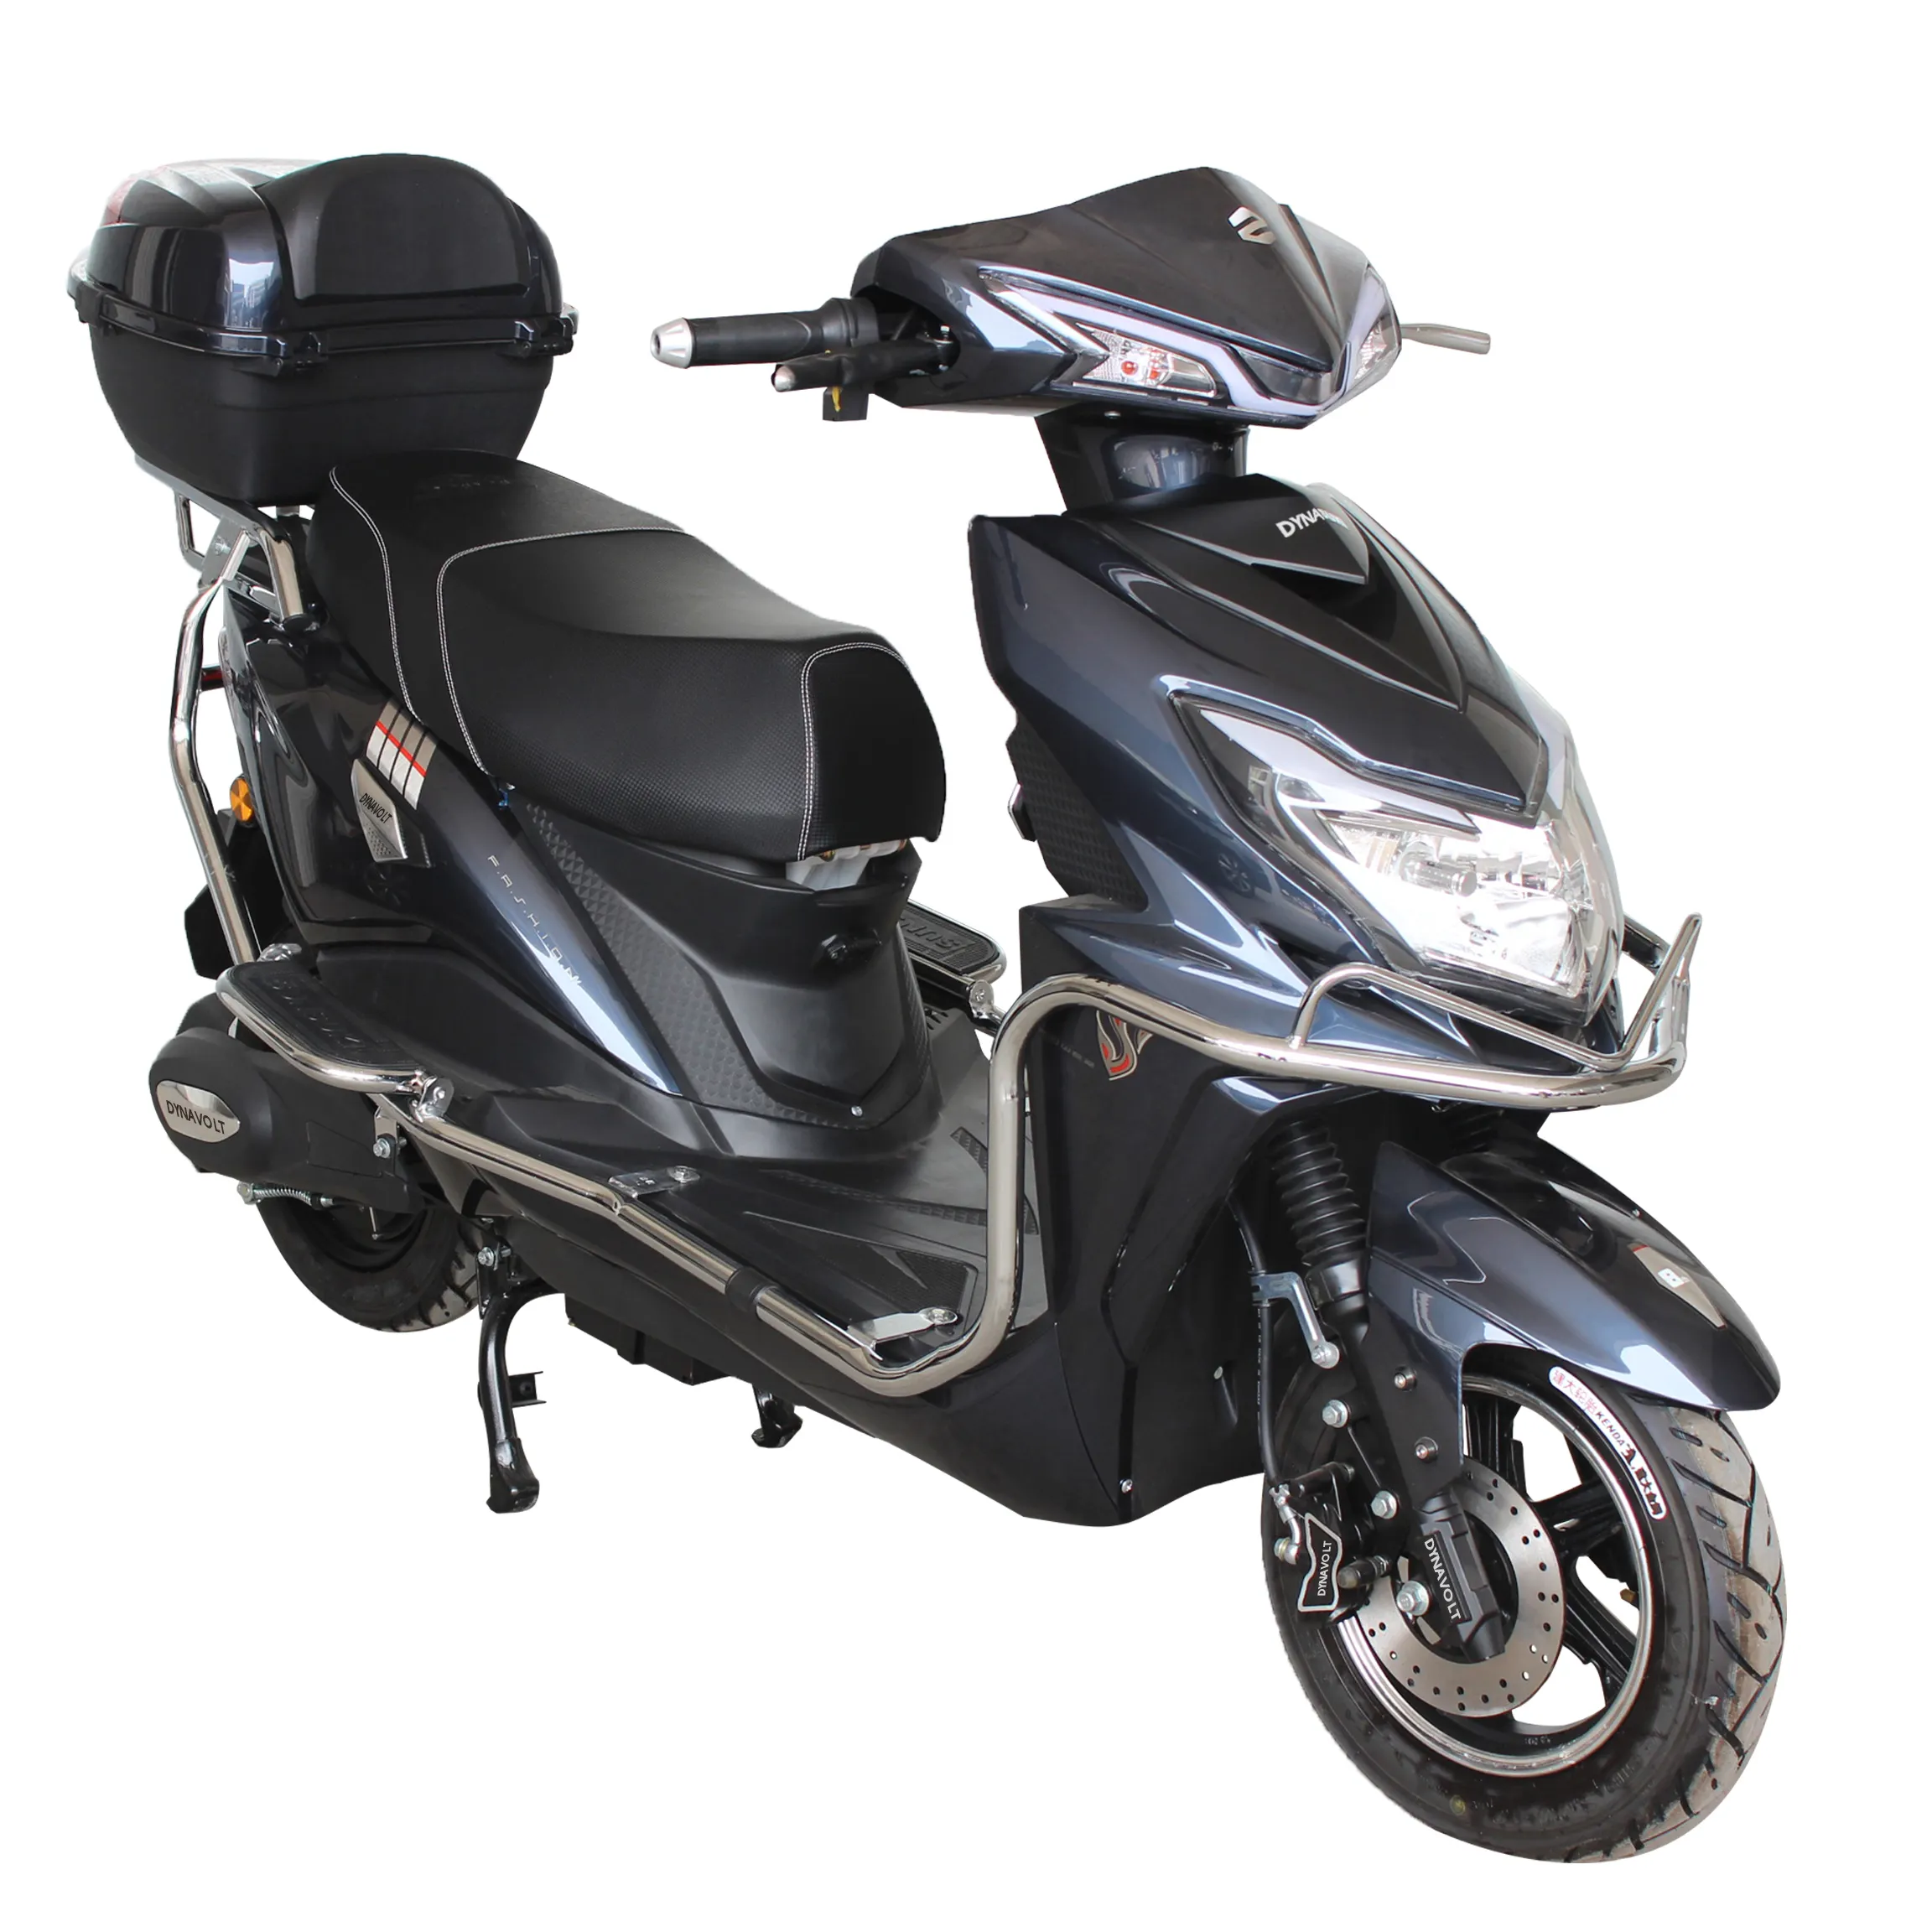 800w 72v nuovo disegno consegna scooter elettrico cina